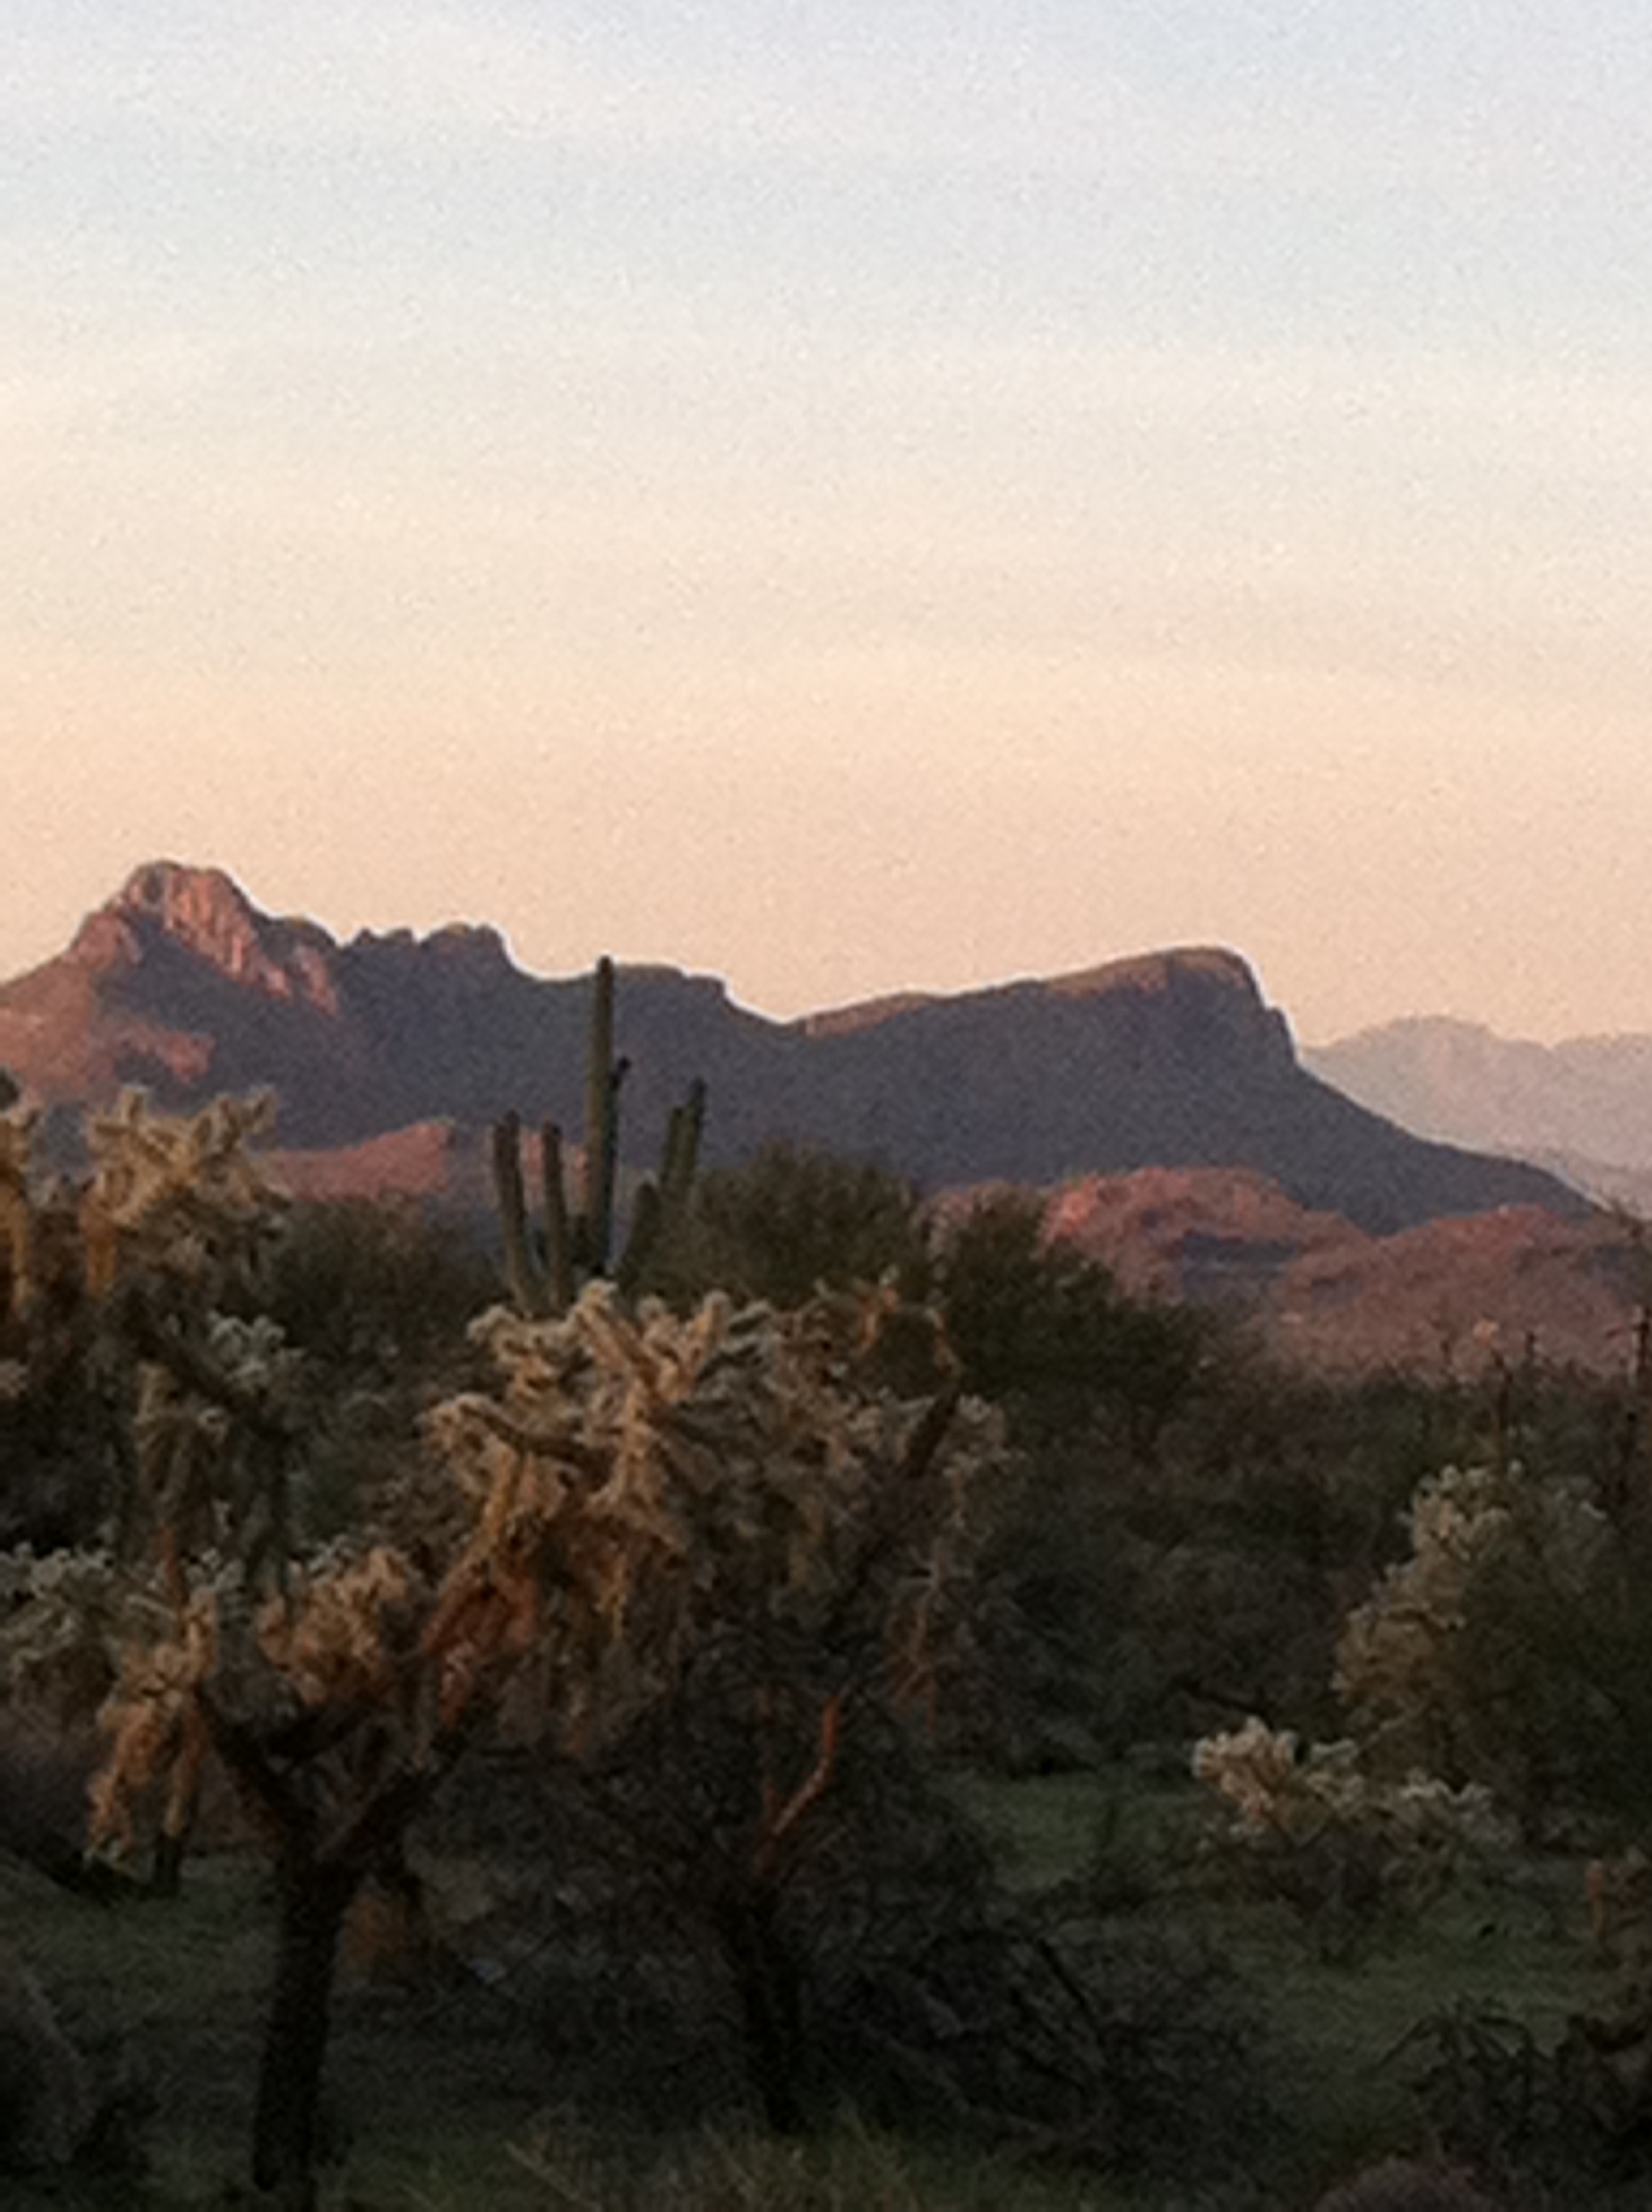 Photos: Tucson's 'A' Mountain through the years